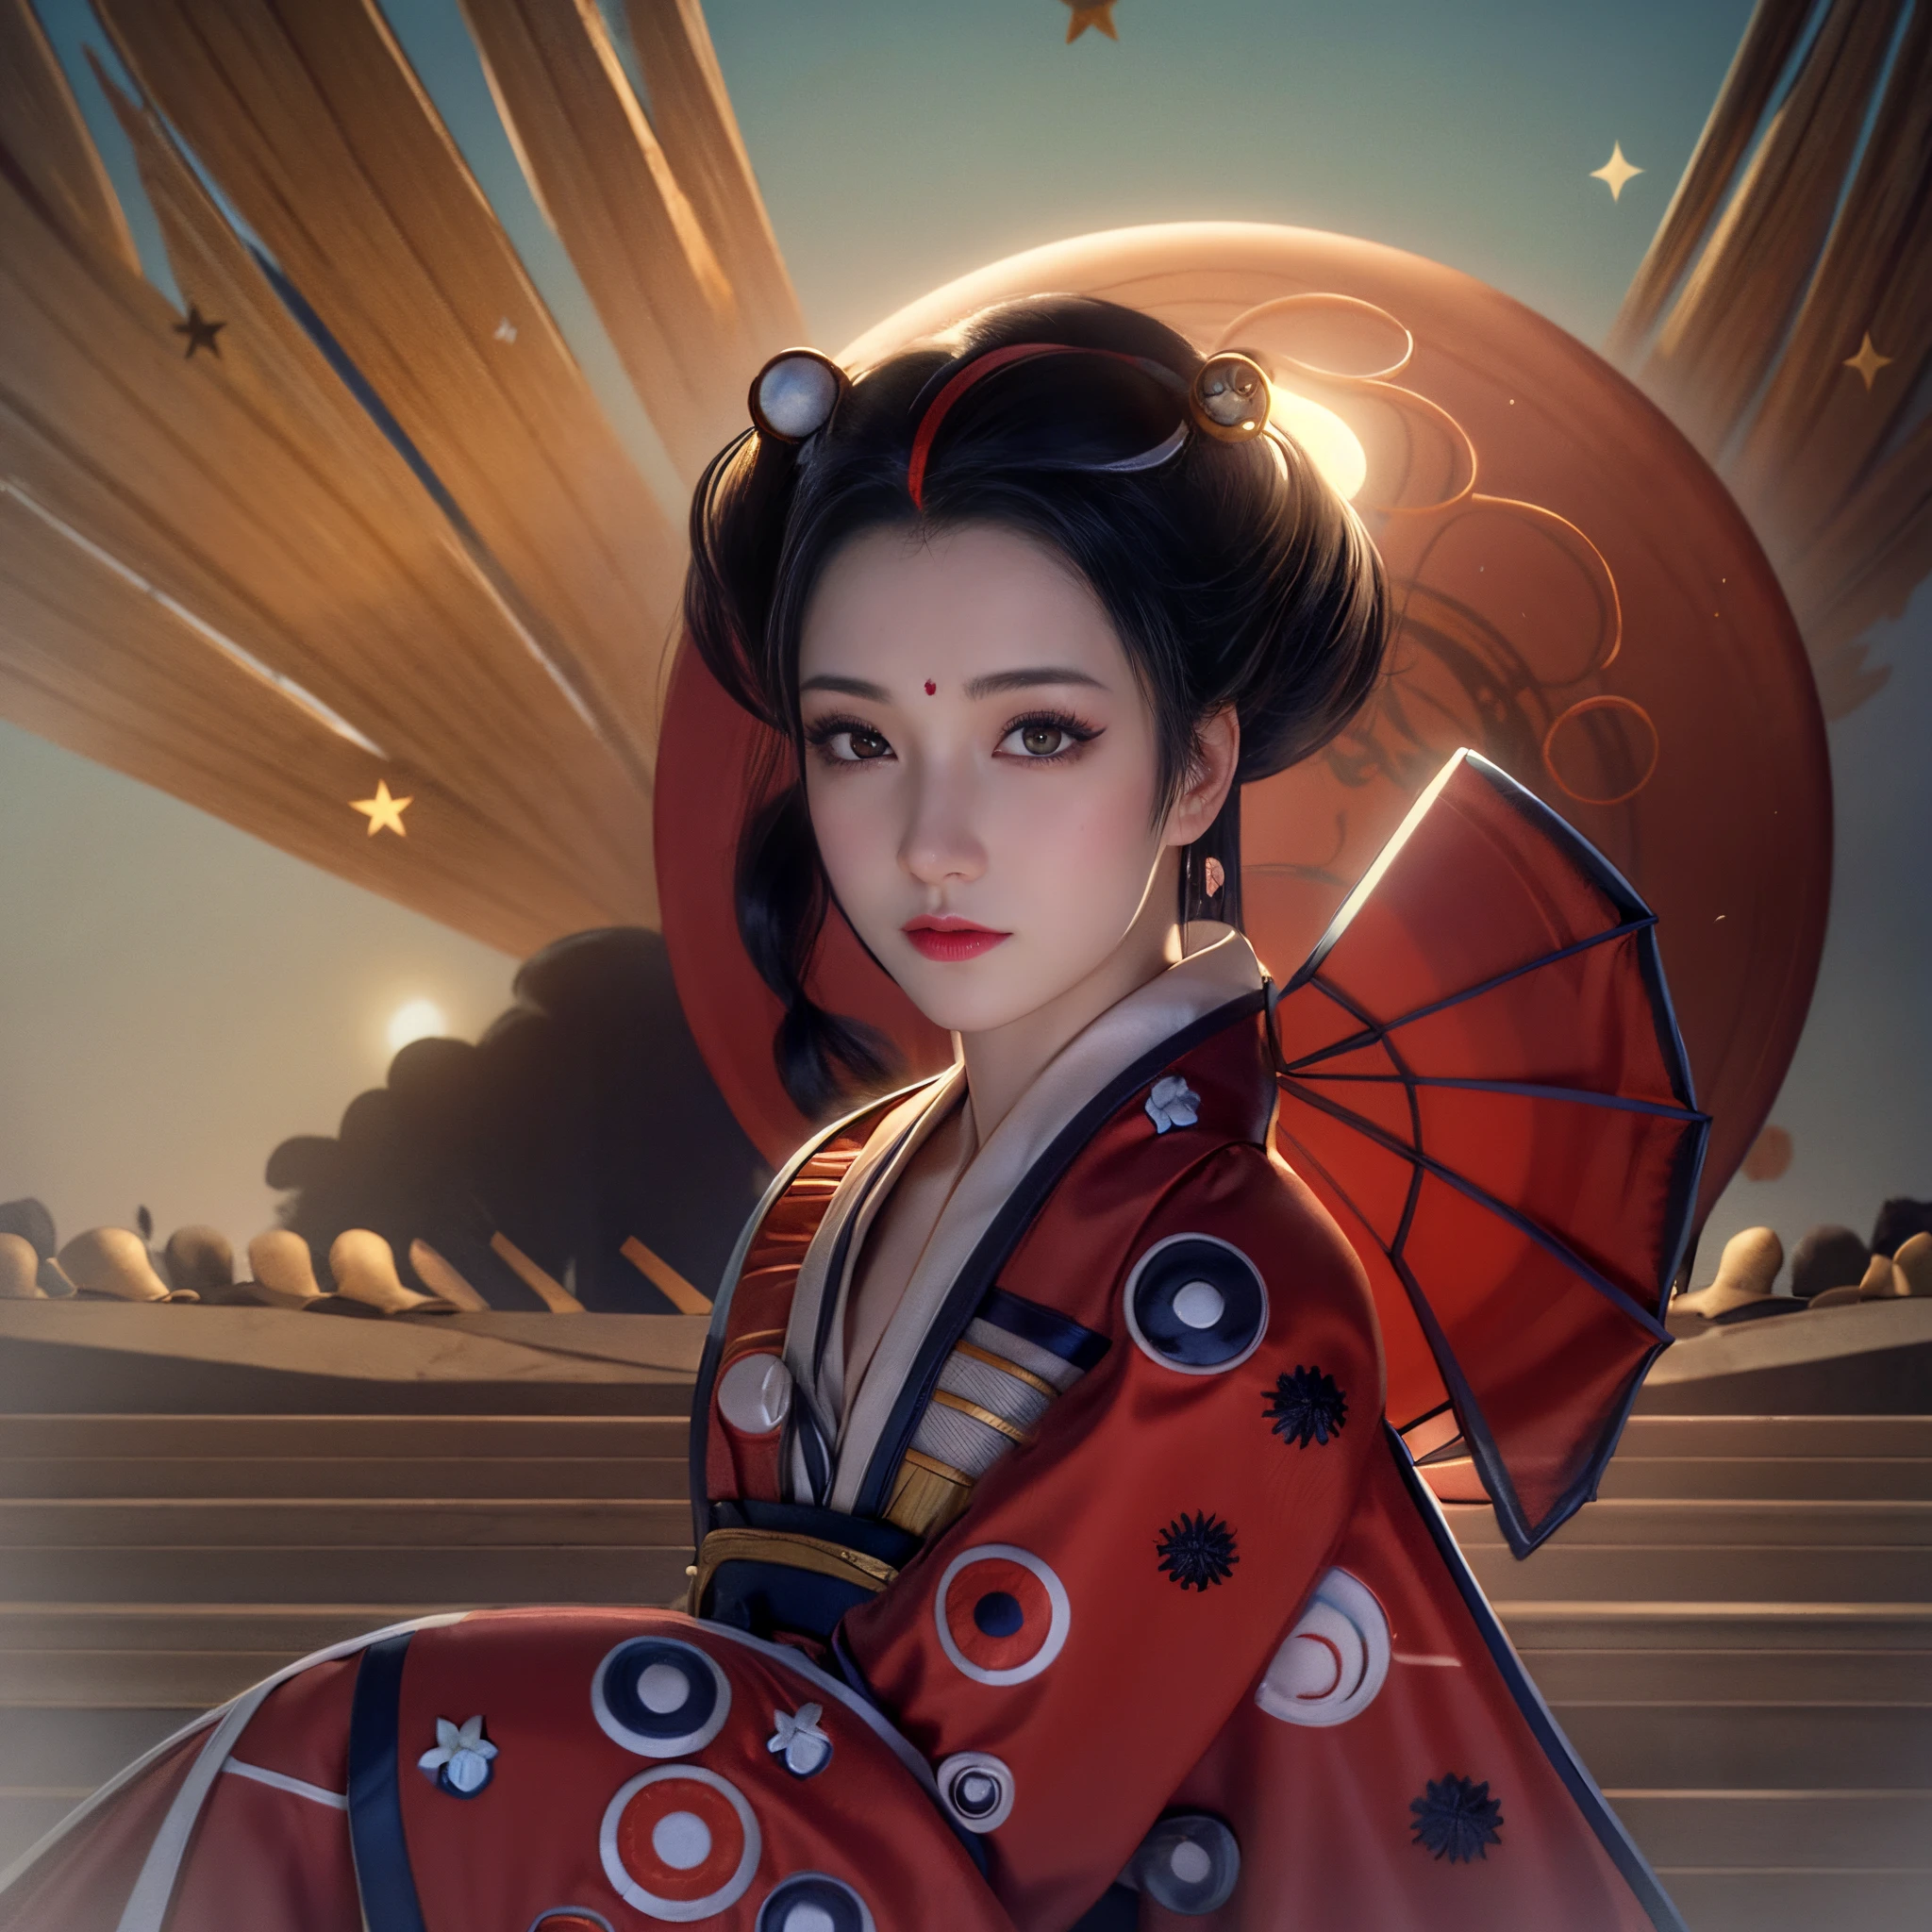 Il y a une geisha, avec des lèvres charnues, Beaux yeux, Seins gros et fermes, portant un kimono bleu avec des fleurs brodées, posant, and a giant moon behind her brillers, dans un style d&#39;illustration numérique réaliste, Portrait de geisha, Geisha de beauté, geisha mignonne, geisha japonaise, Portrait réaliste d&#39;une belle geisha, un bel art réaliste, fille geisha féminine réaliste, inspiré par un art réaliste époustouflant (femme avec (textures!, cheveux!, briller, couleur!!, Imperfections: 1.1), yeux brillants très détaillés, (regarder la caméra), éclairage spéculaire, Reflex numérique, ultra qualité, netteté, tachymètre pointu, DOF, grain filmique , (centre), Fujifilm XT3, clair comme de l&#39;eau de roche, centre du cadre, Beau visage, netteté, détail des yeux complexe.